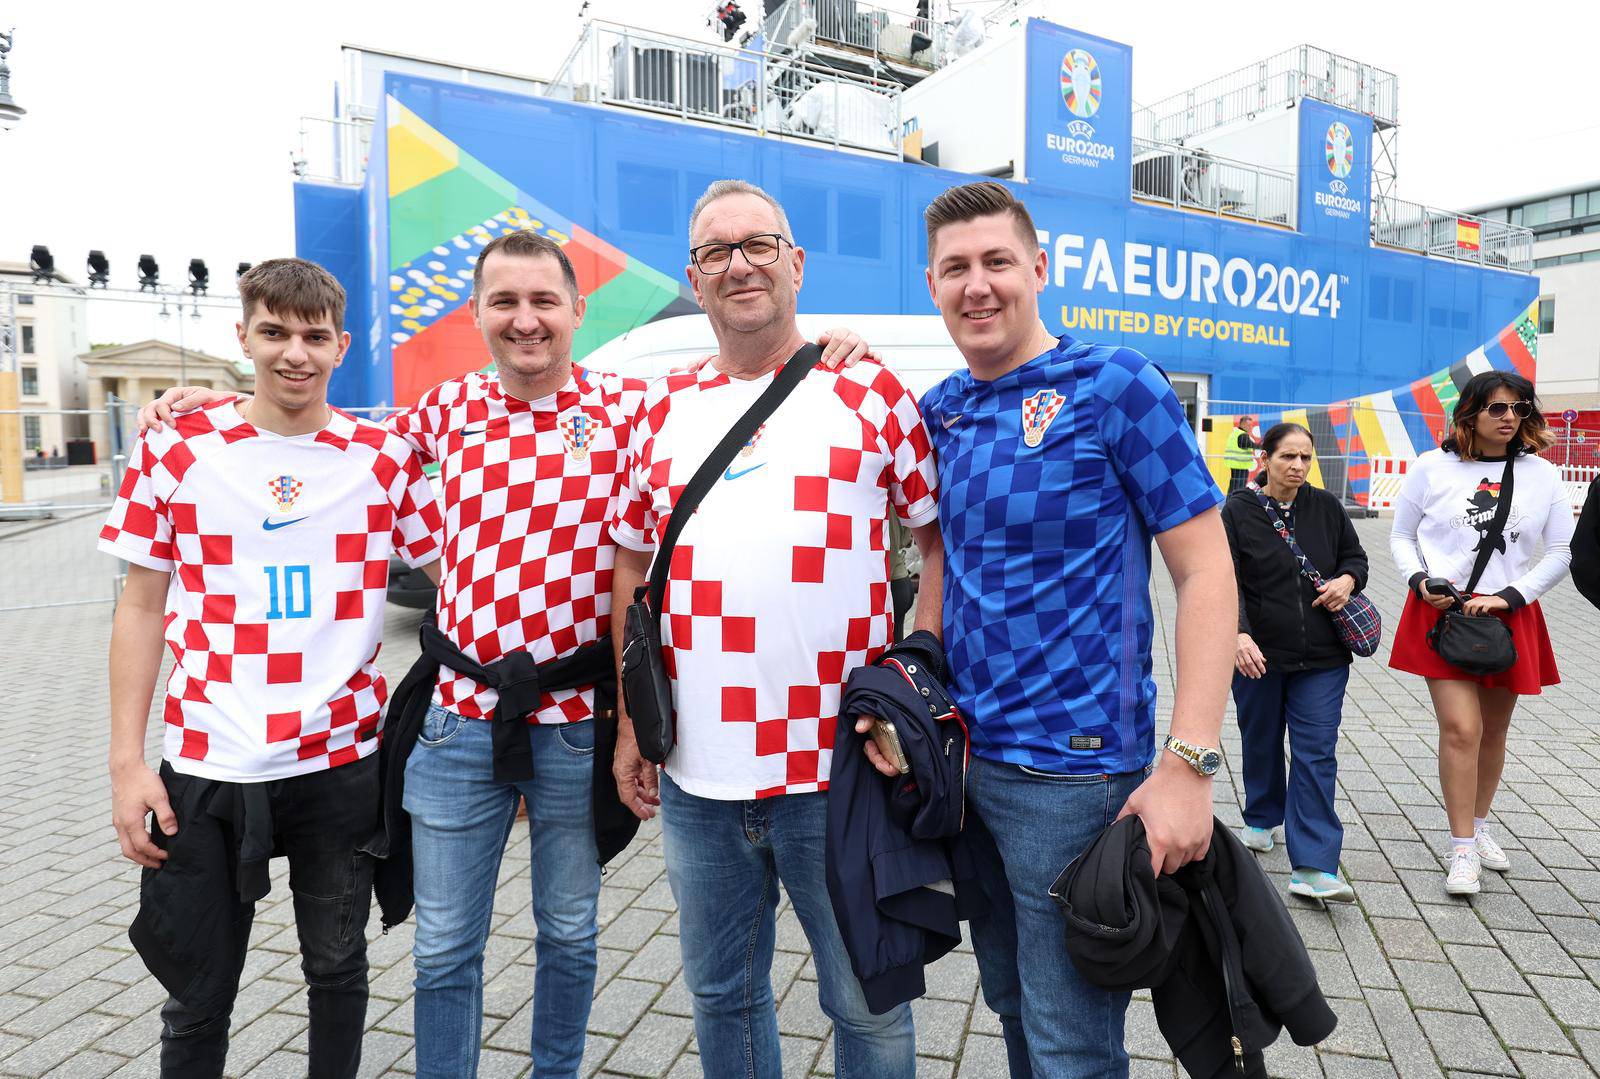 Berlin: Pored Fan zone blizu Brandenburških vrata počeli su se okupljati hrvatski navijači